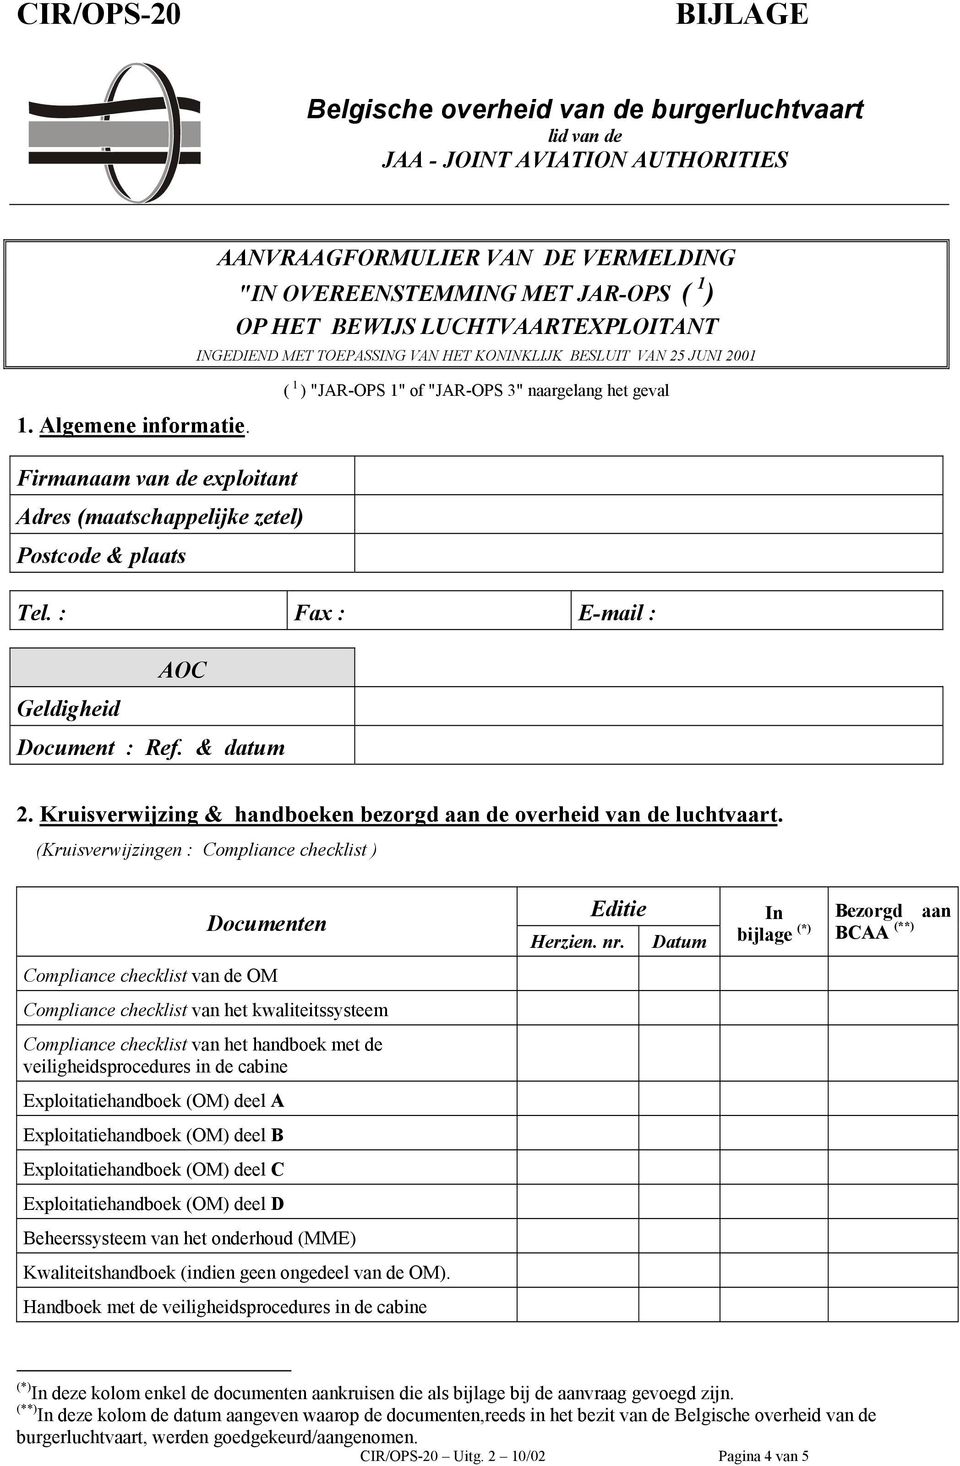 ( 1 ) "JAR-OPS 1" of "JAR-OPS 3" naargelang het geval Firmanaam van de exploitant Adres (maatschappelijke zetel) Postcode & plaats Tel. : Fax : E-mail : AOC Geldigheid Document : Ref. & datum 2.